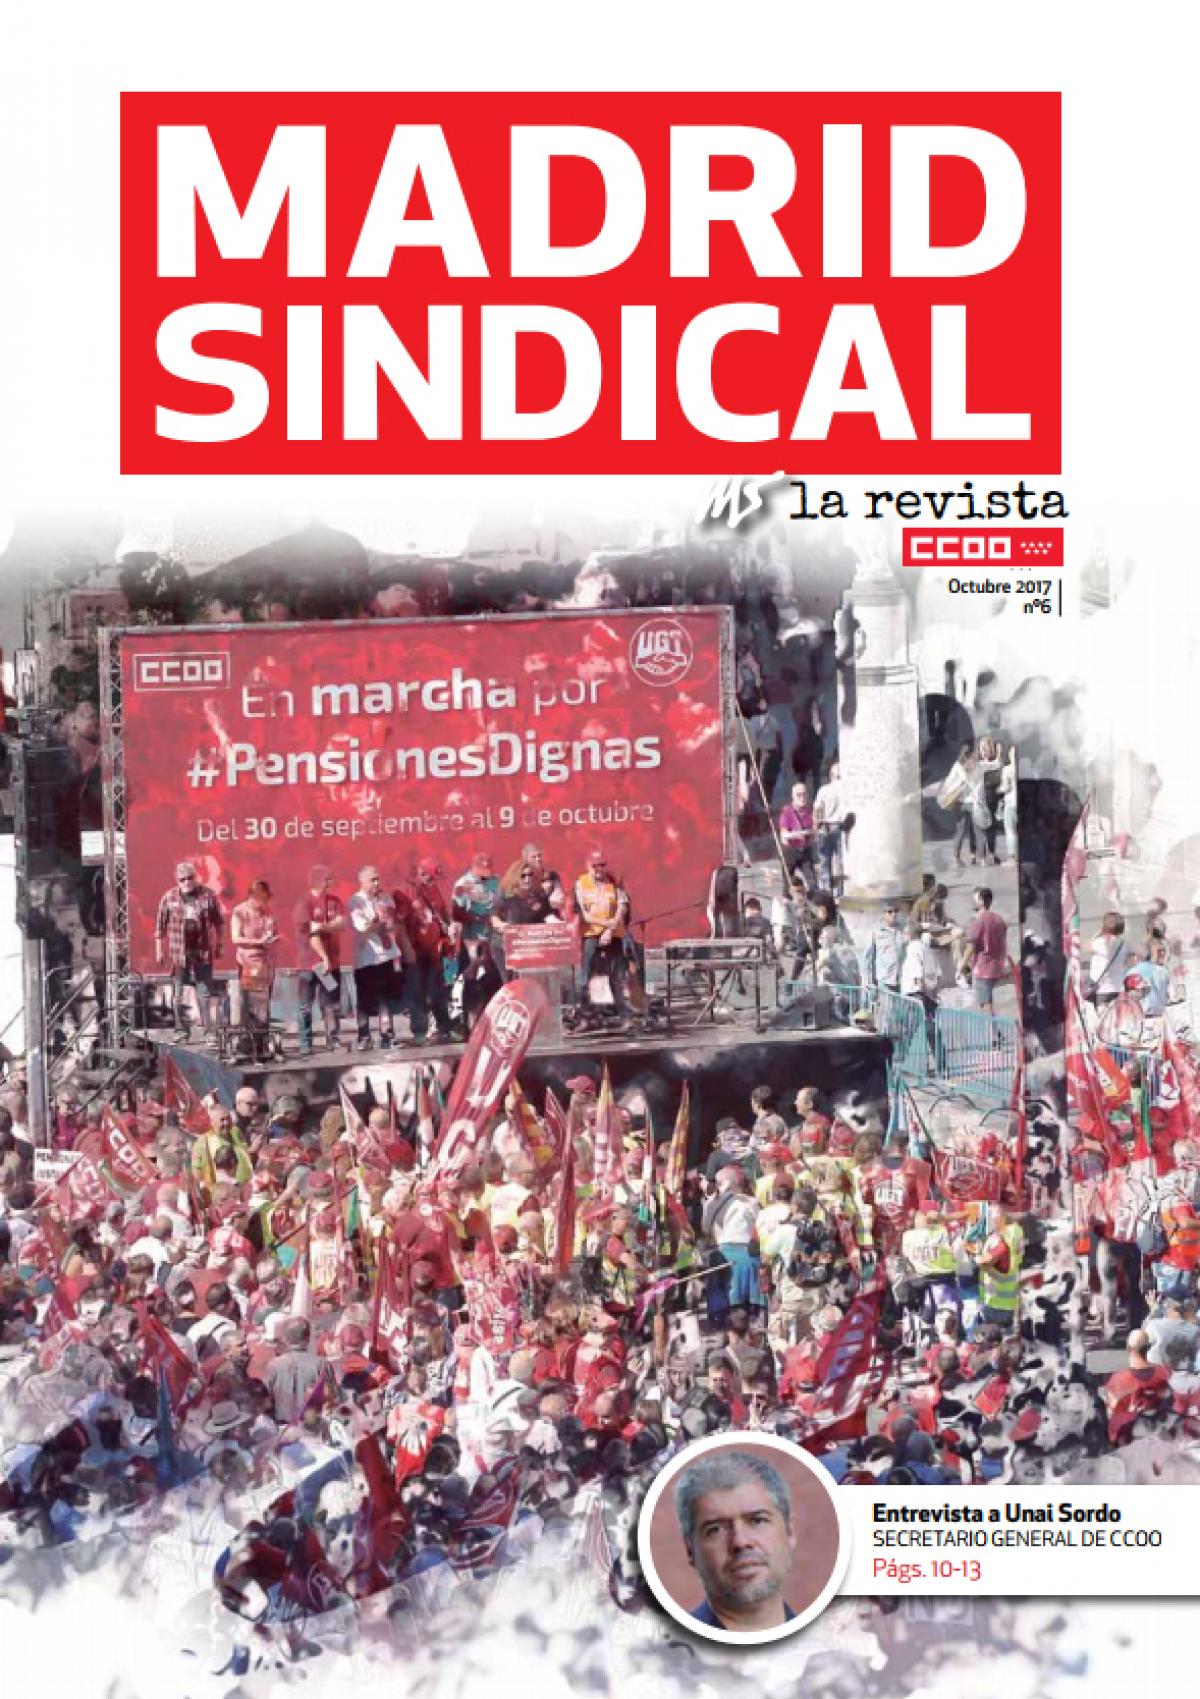 Madrid Sindical la Revista nº6 octubre 2017